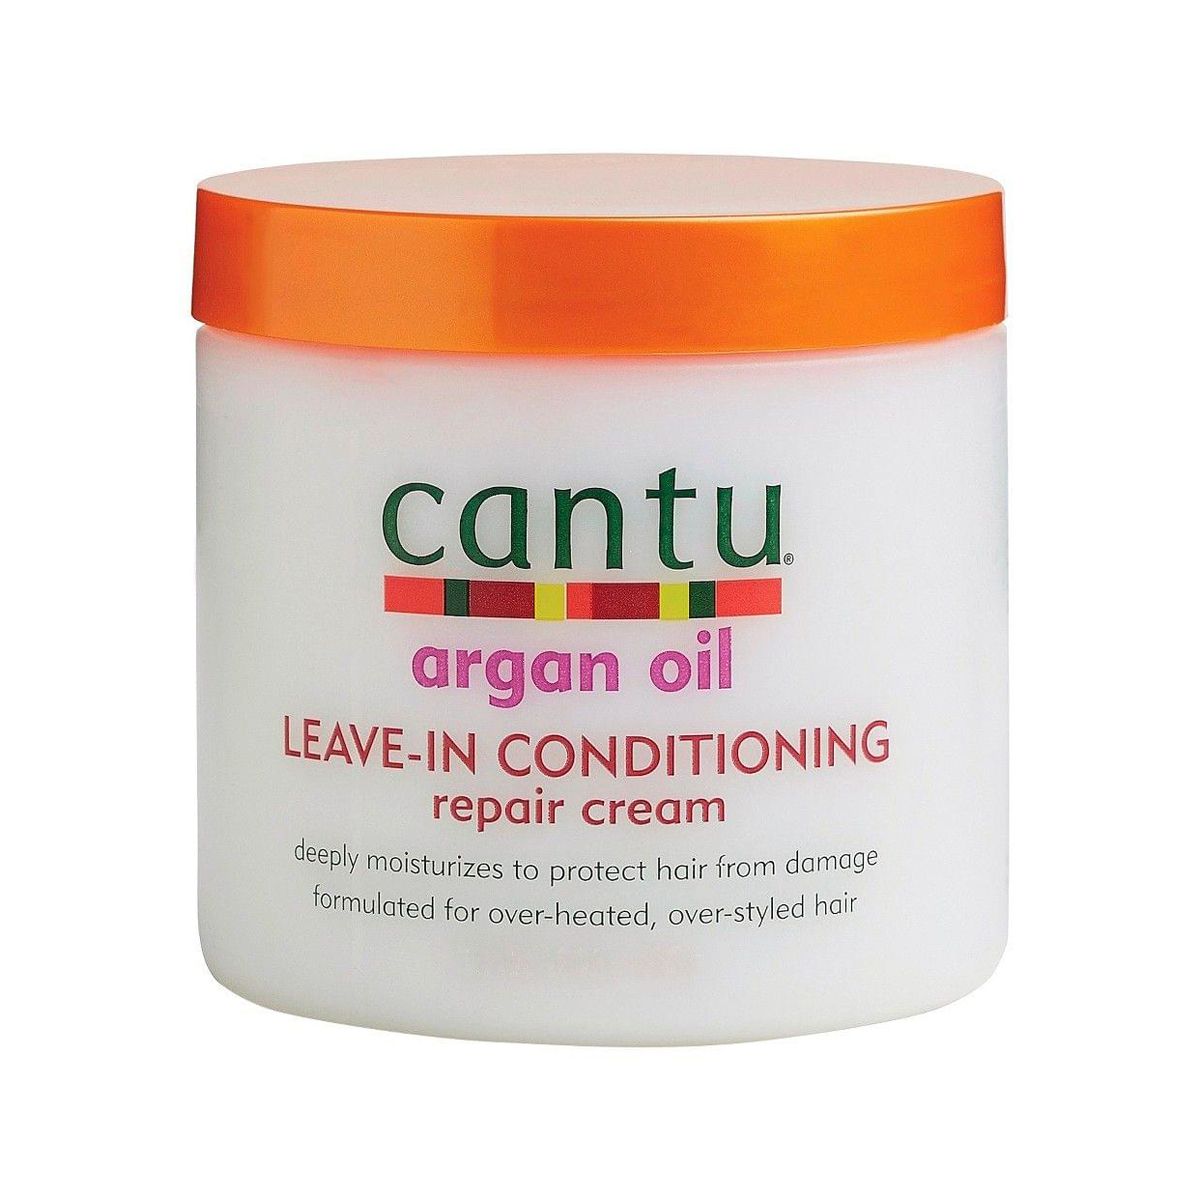 CANTU Argan Oil Leave-In Conditioning Repair Cream-435g